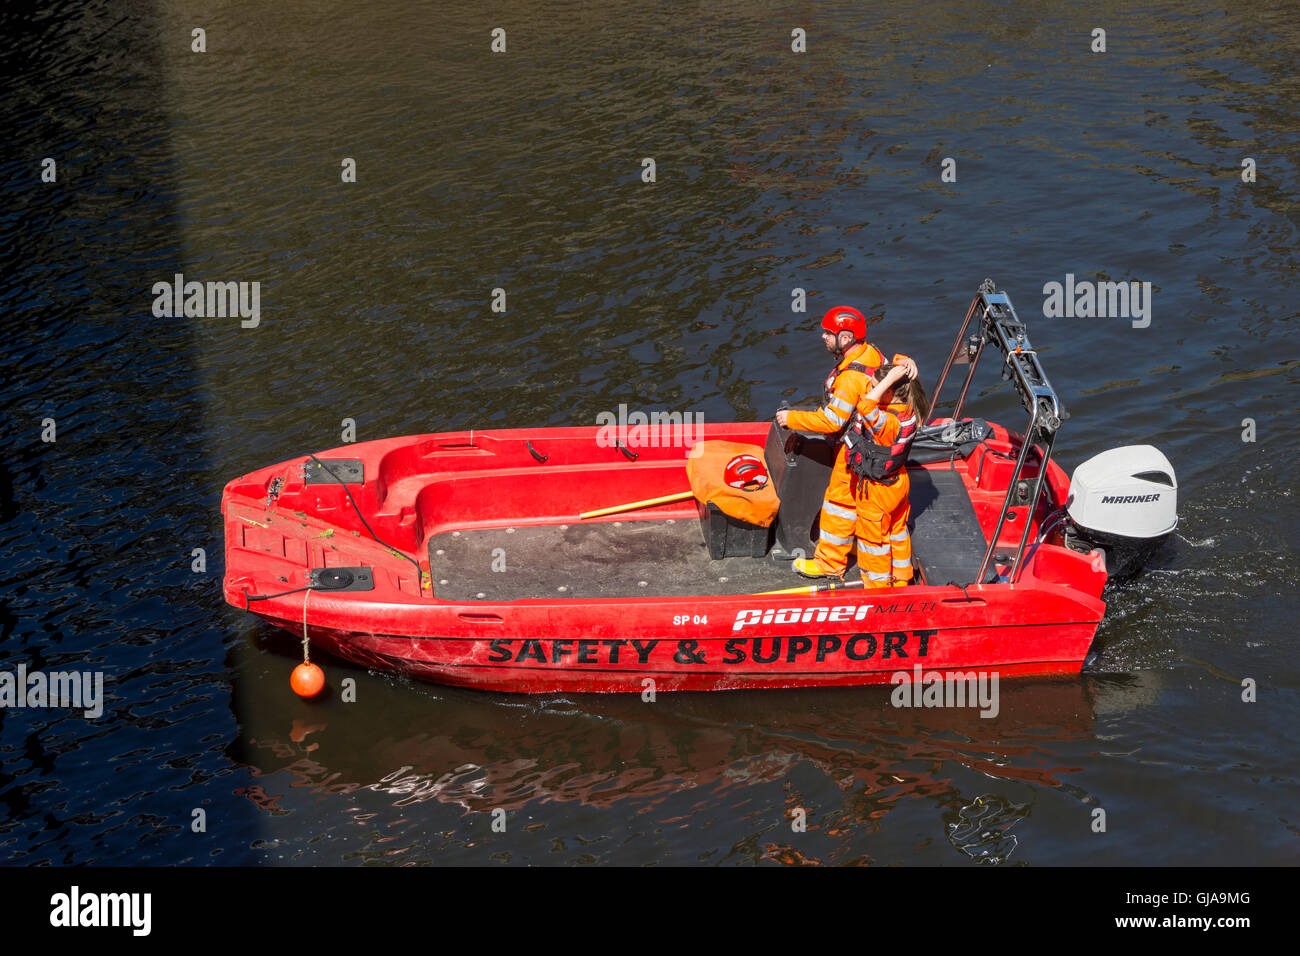 Sicurezza e sostegno barca sul fiume Irwell, Manchester, Inghilterra, Regno Unito, impegnato durante la corda Ordsall railway bridge funziona. Foto Stock